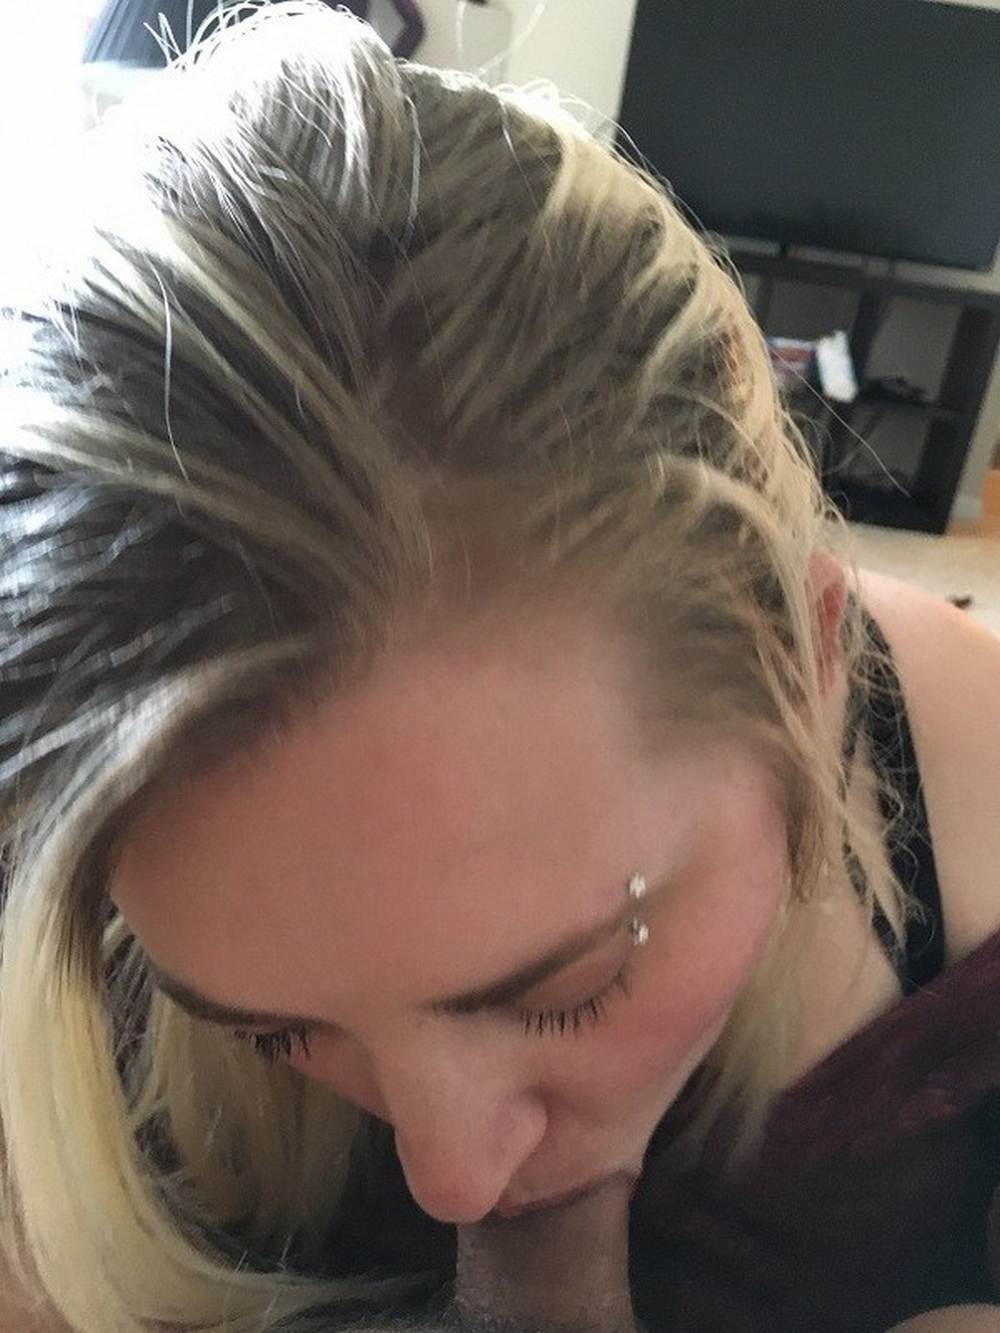 Блондинка с пирсингом в брови делает минет перед камерой 13 фотография